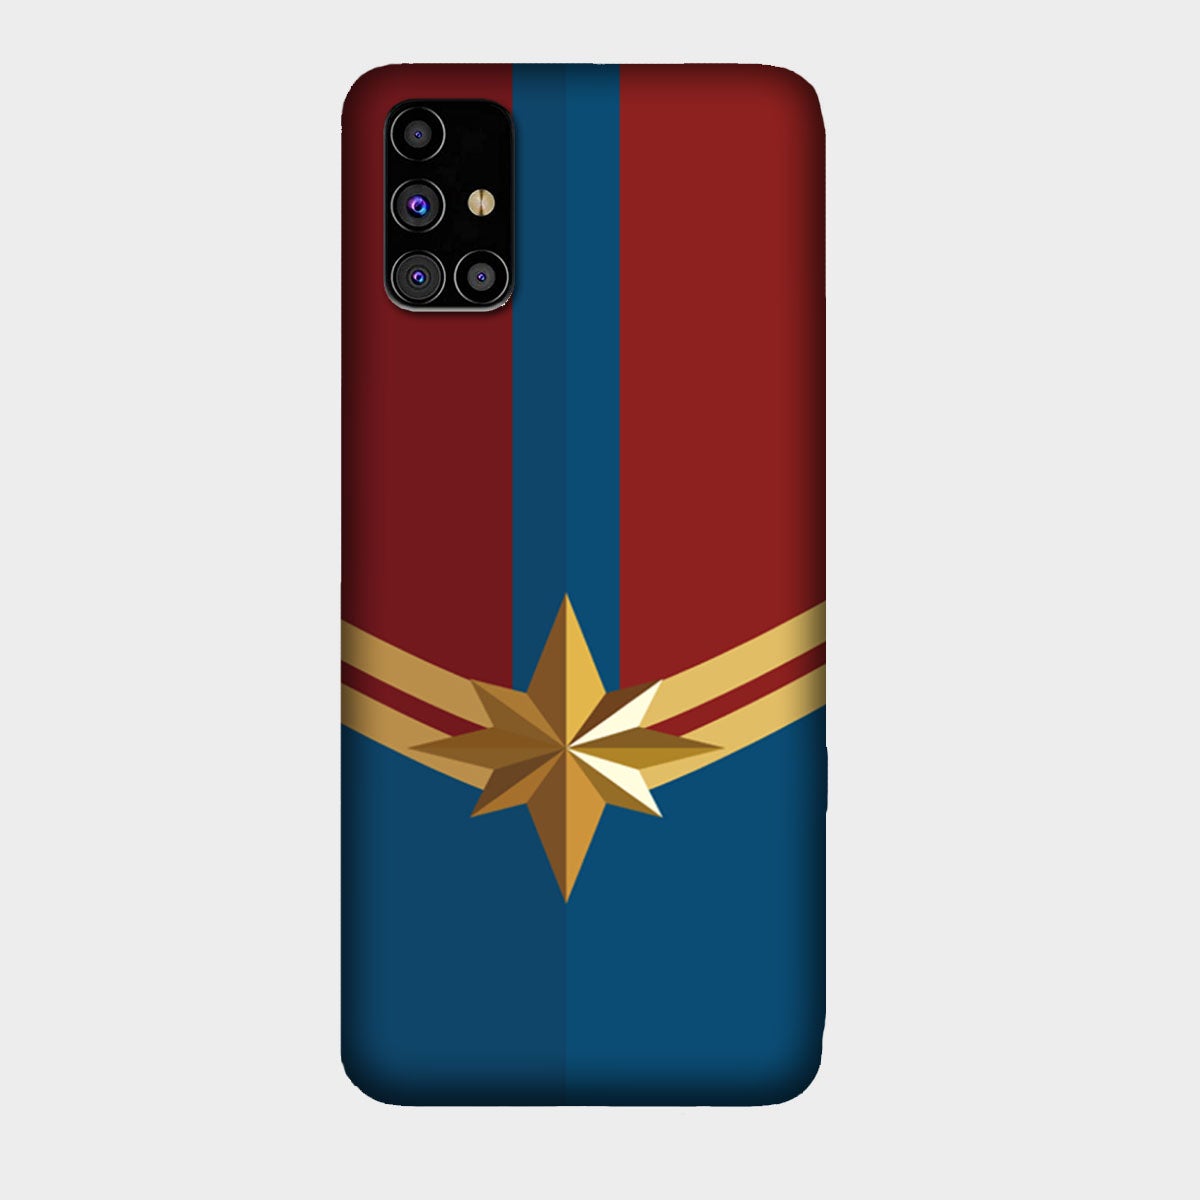 Captain Marvel - Avengers - Mobile Phone Cover - Hard Case - Samsung - Samsung